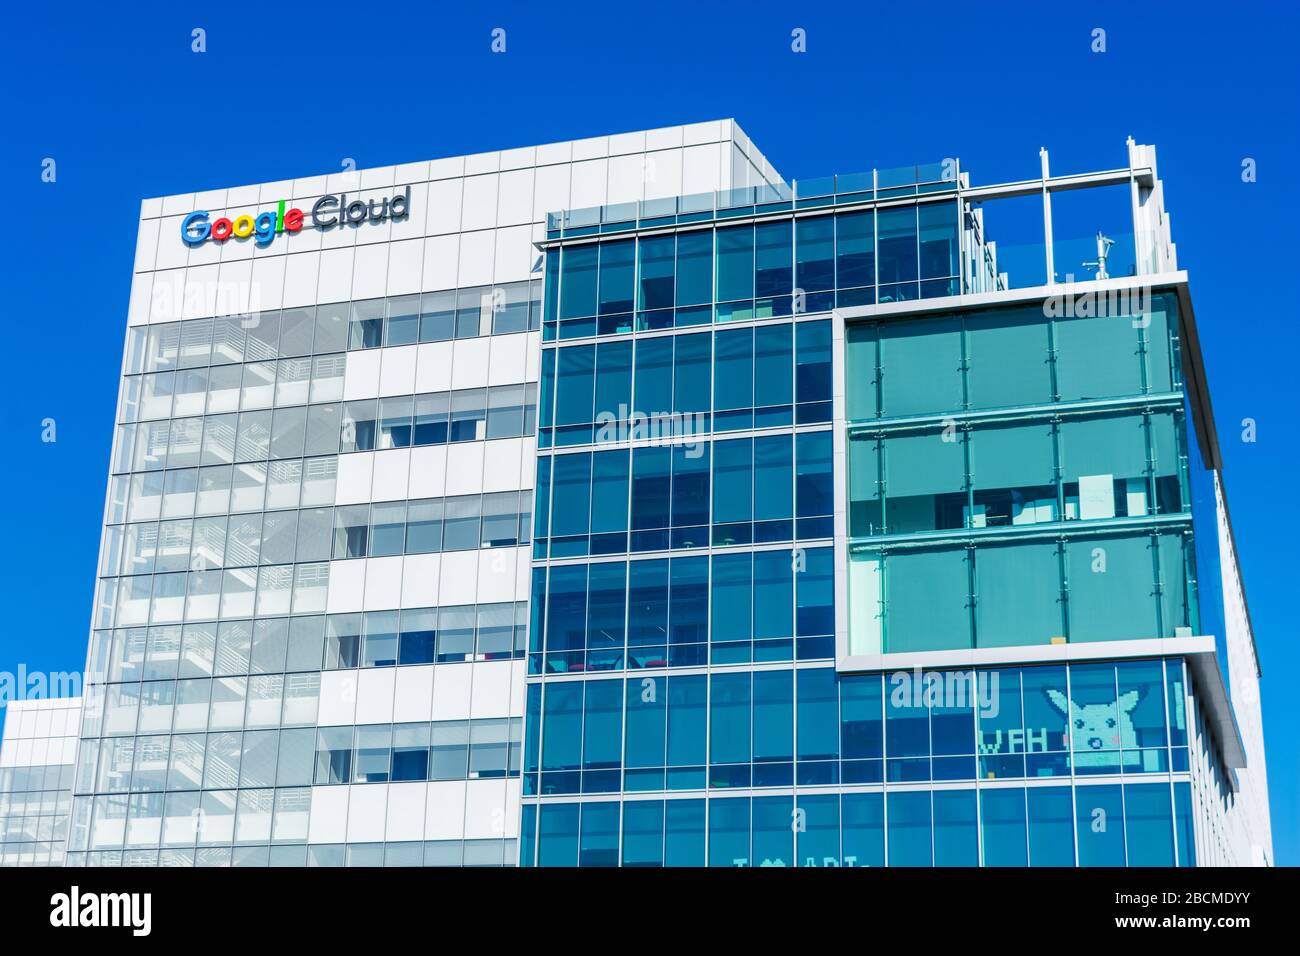 Google Cloud HQ facciata con WFH, lavoro da casa, segno. Google ha detto ai dipendenti di lavorare da casa come precauzione contro la diffusione del coronavirus Foto Stock